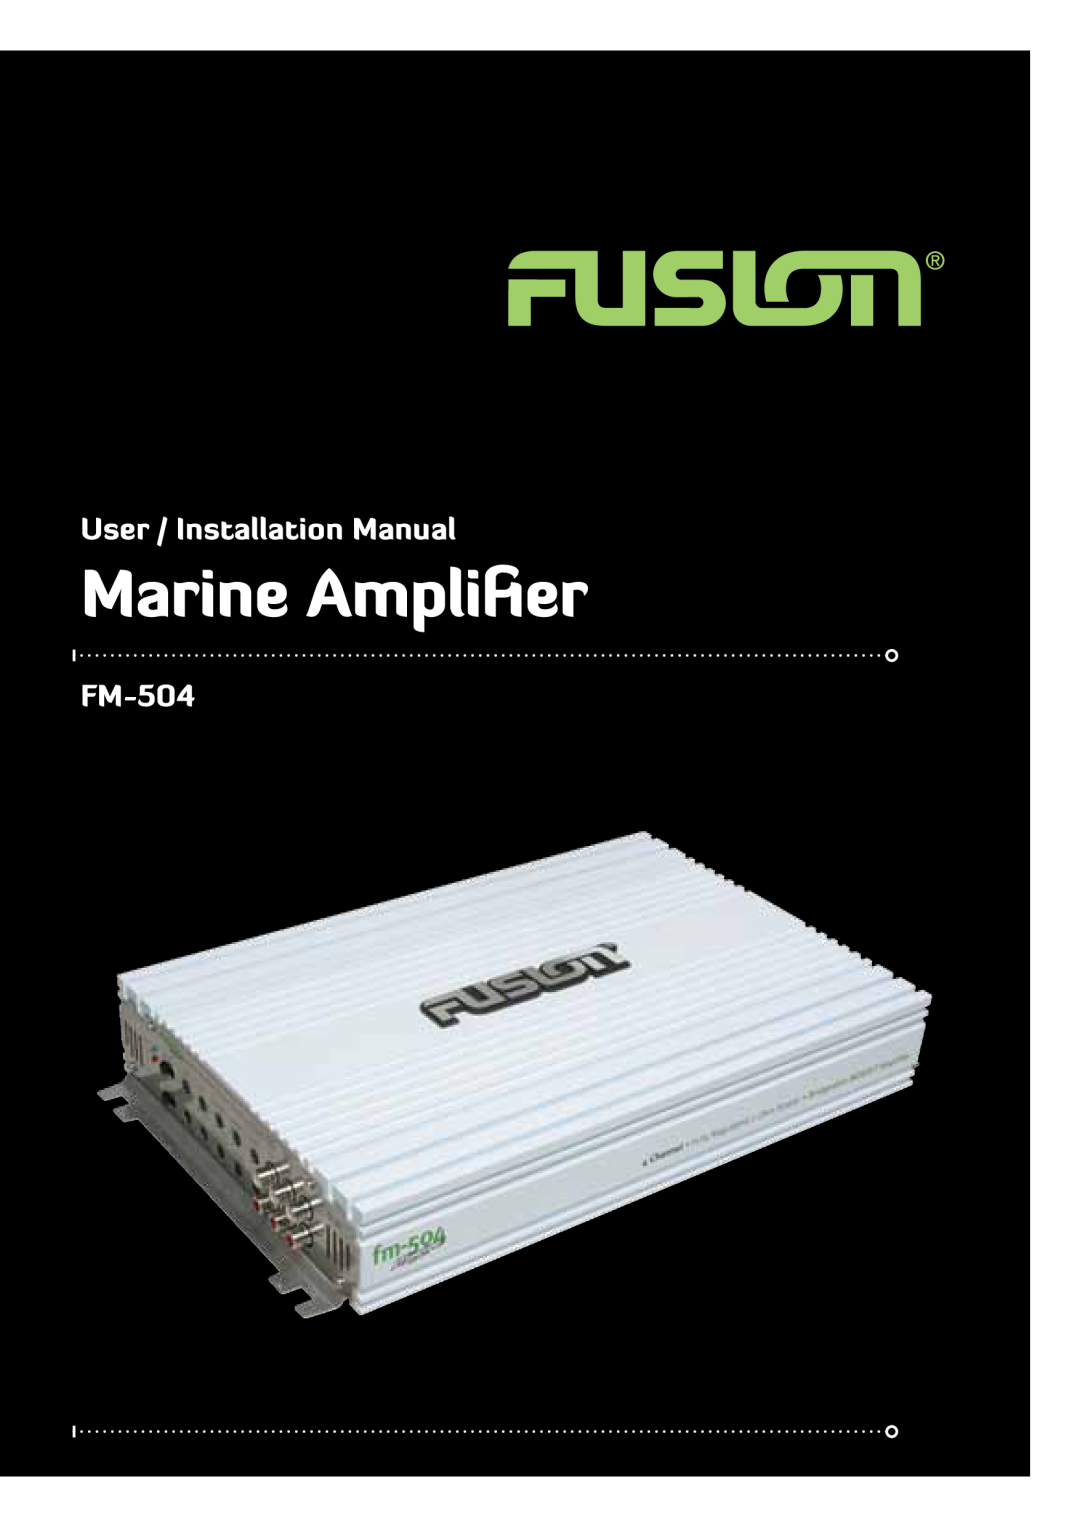 Fusionbrands fm-504 installation manual Marine Amplifier, User / Installation Manual, FM-504 